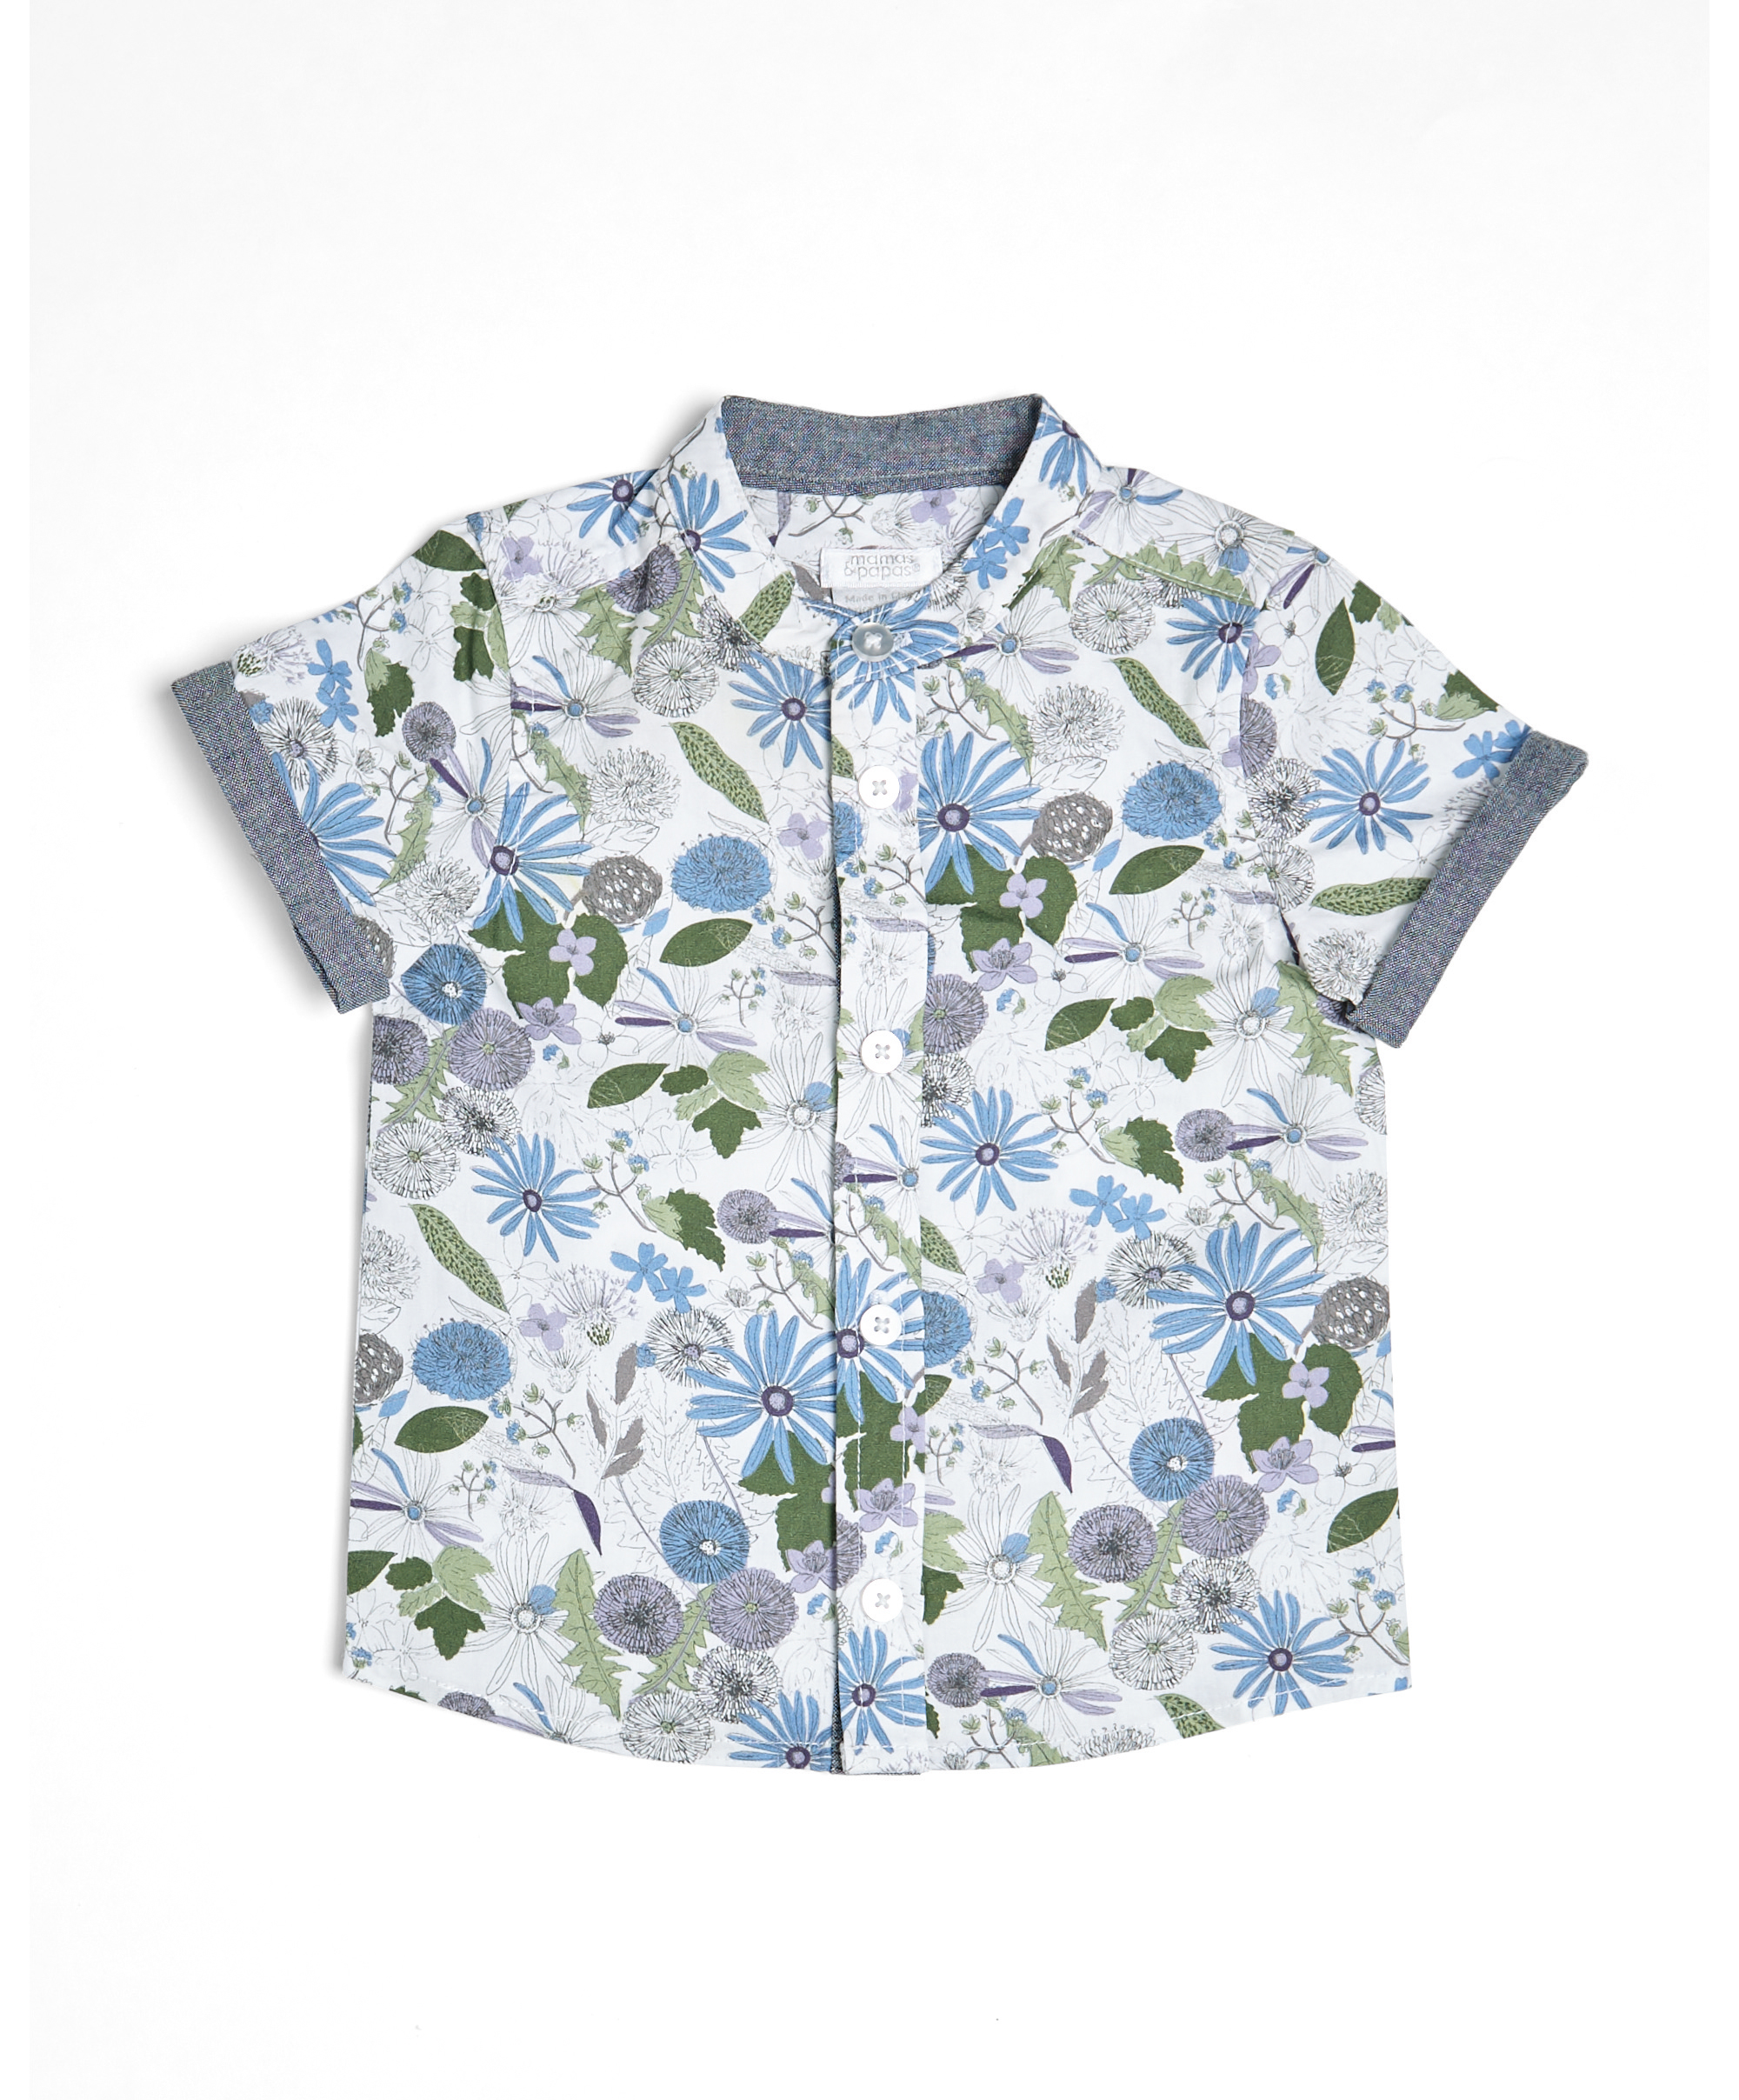 Buy Printed Short Sleeve Shirt for BHD 3.750 - Tops & T-shirts | Mamas ...